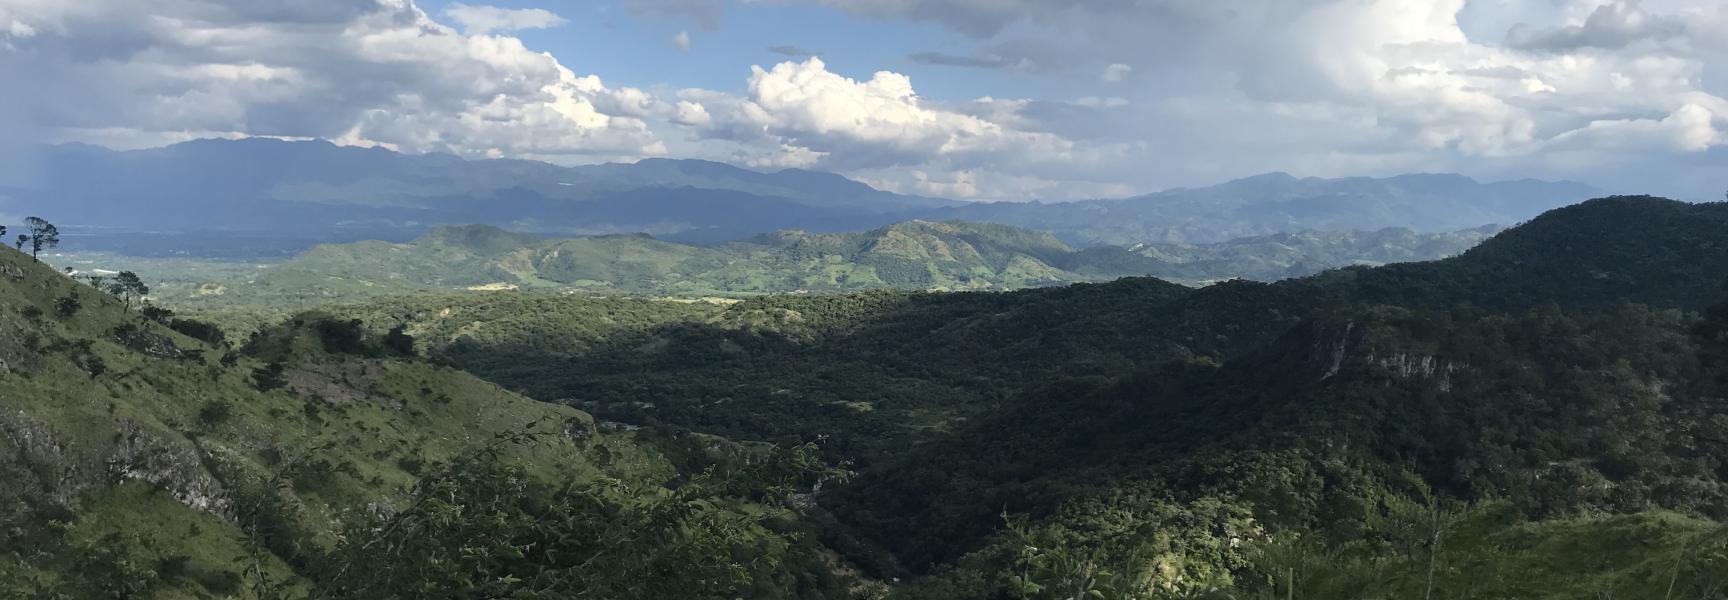 Honduras paisaje